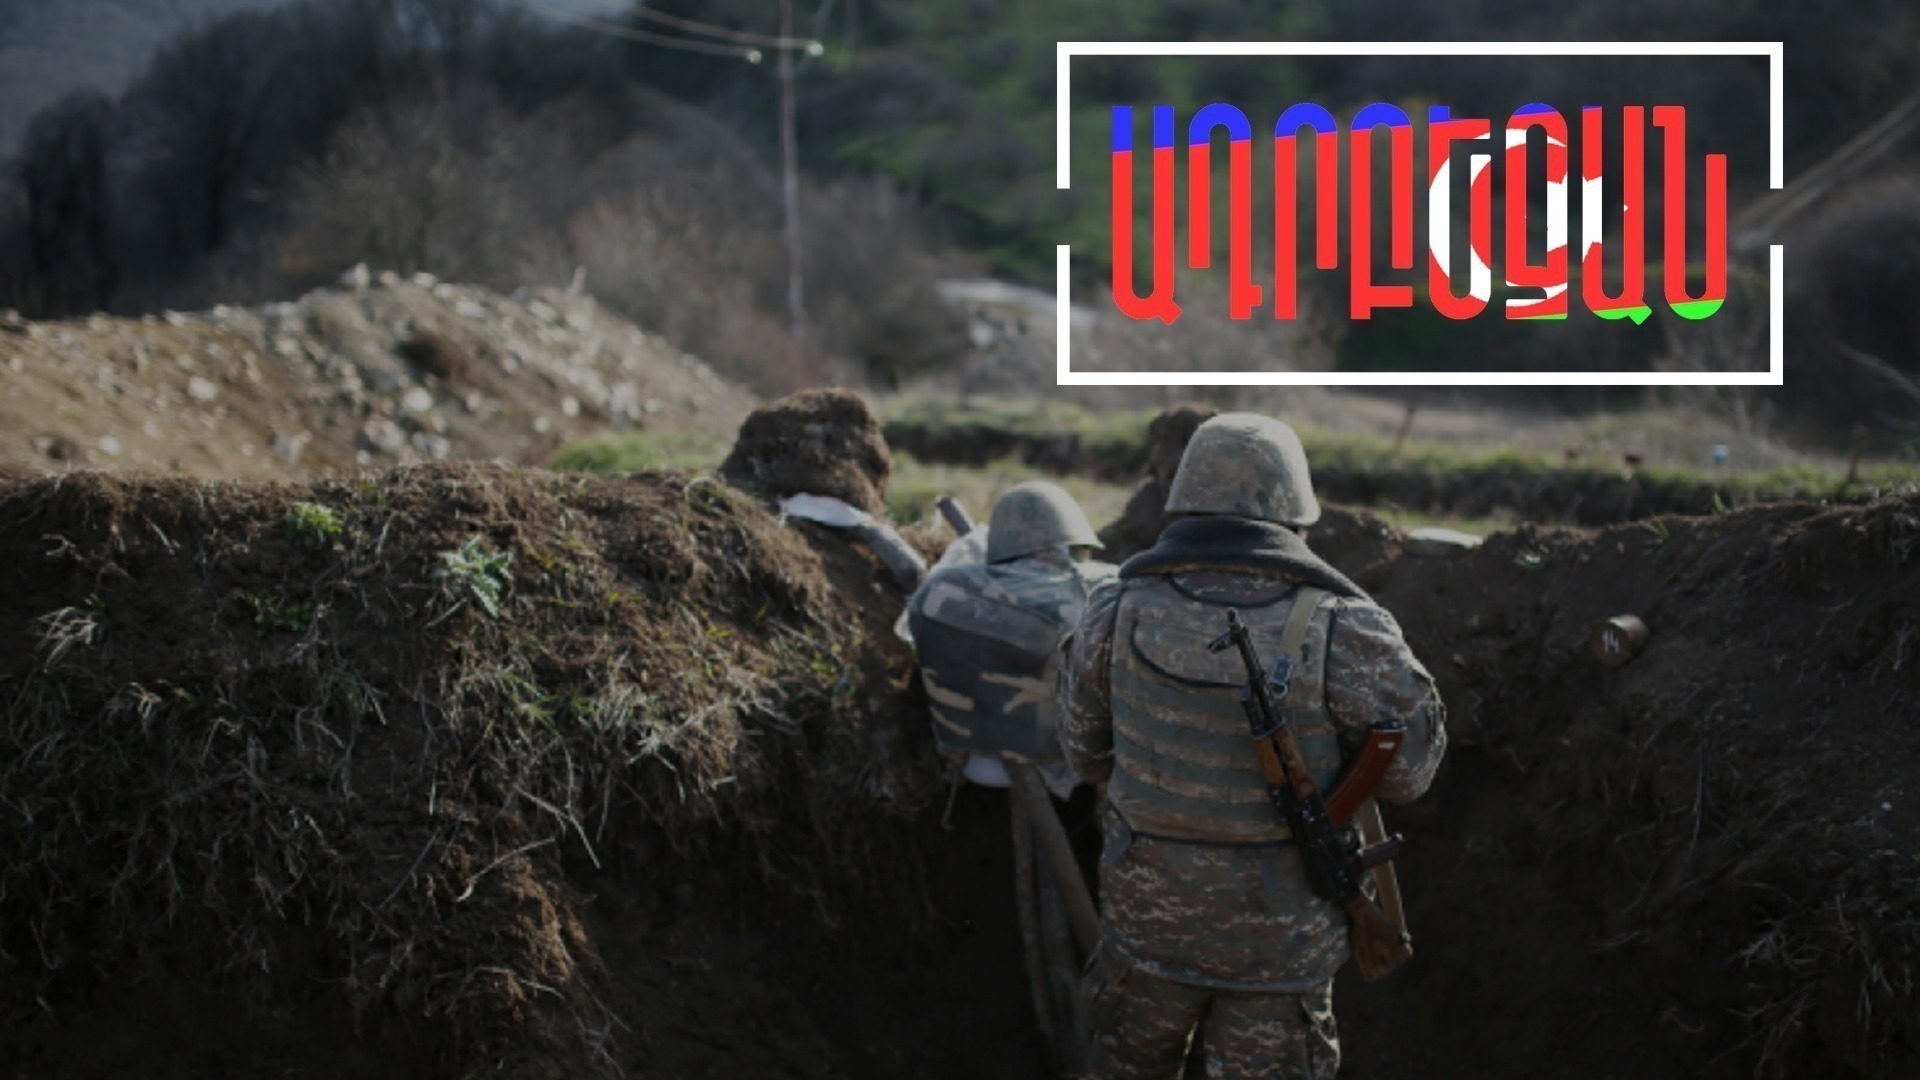 Ադրբեջանը գործի է դրել հայ զինծառայողների գերեվարման շուրջ իր քարոզչությունը